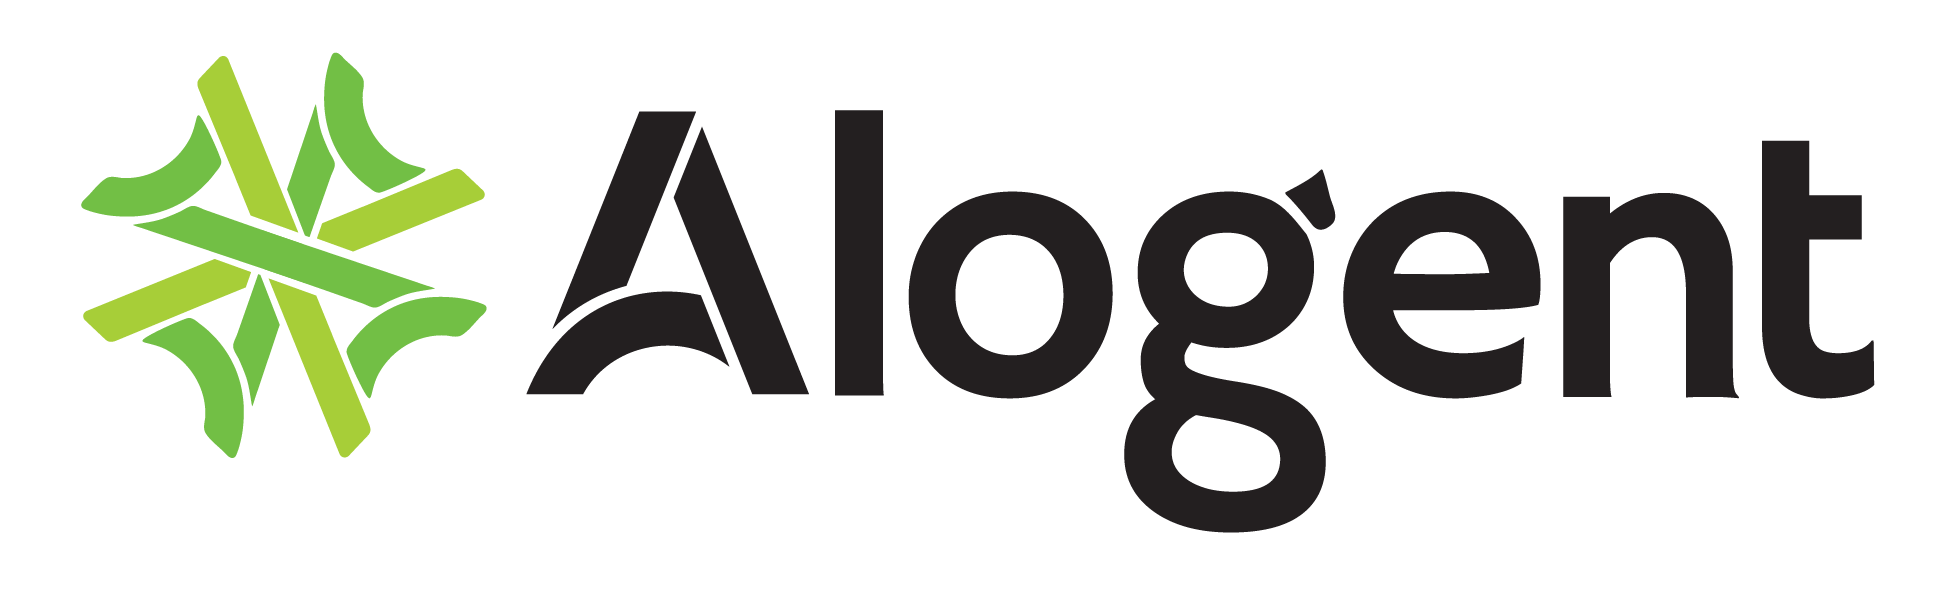 Alogent Conference, Apr. 20-23, 2020, Coronado, CA